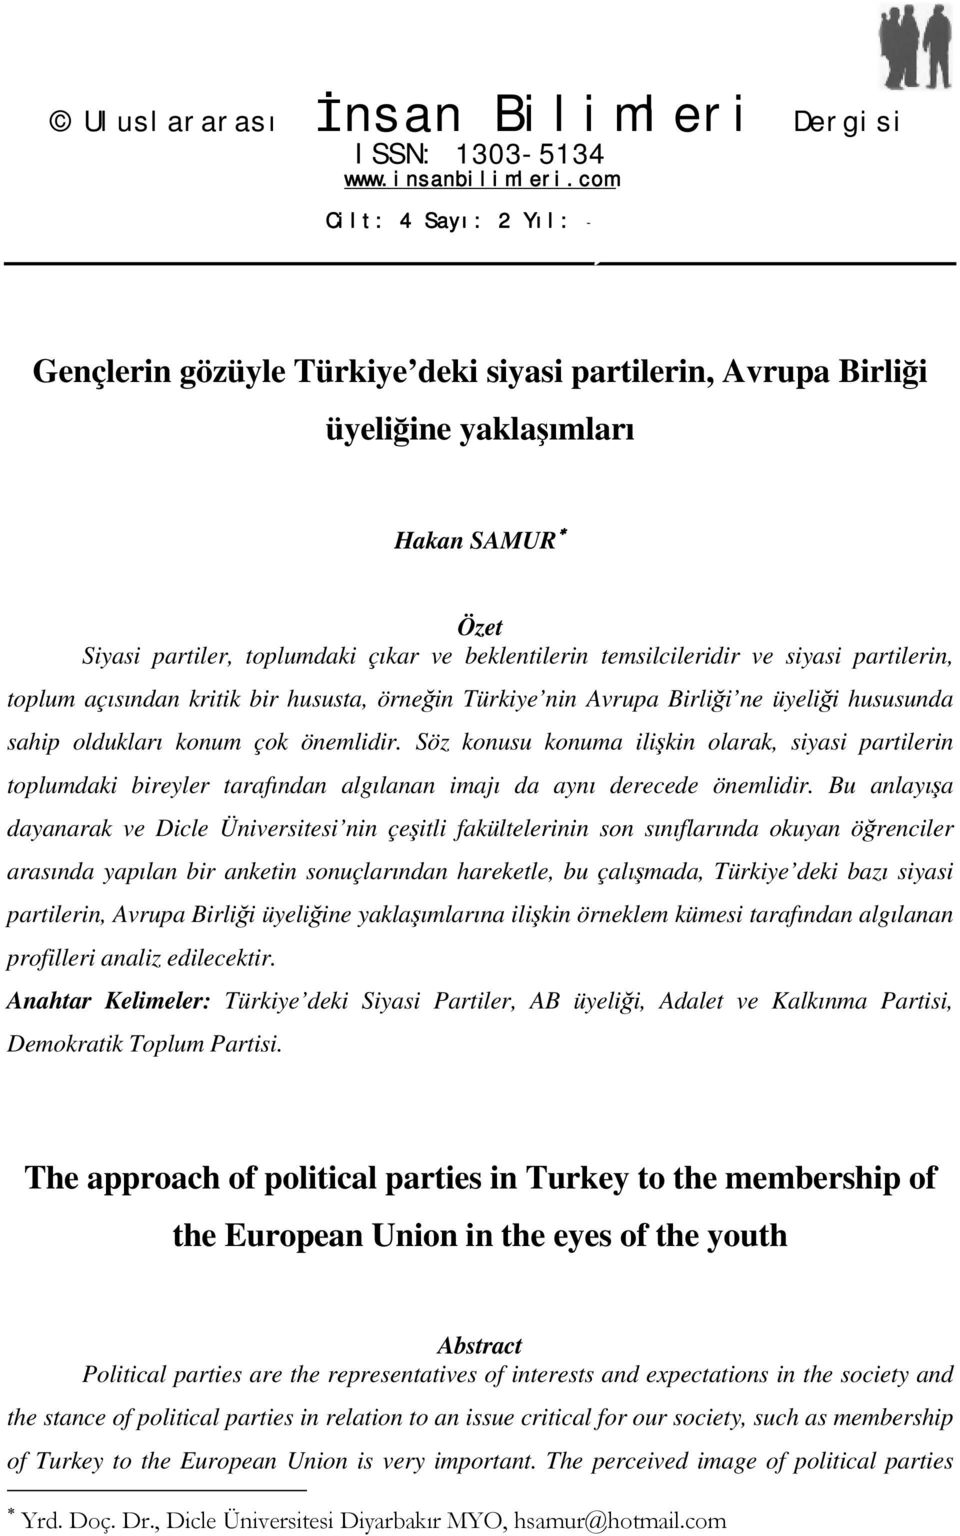 temsilcileridir ve siyasi partilerin, toplum açısından kritik bir hususta, örneğin Türkiye nin Avrupa Birliği ne üyeliği hususunda sahip oldukları konum çok önemlidir.